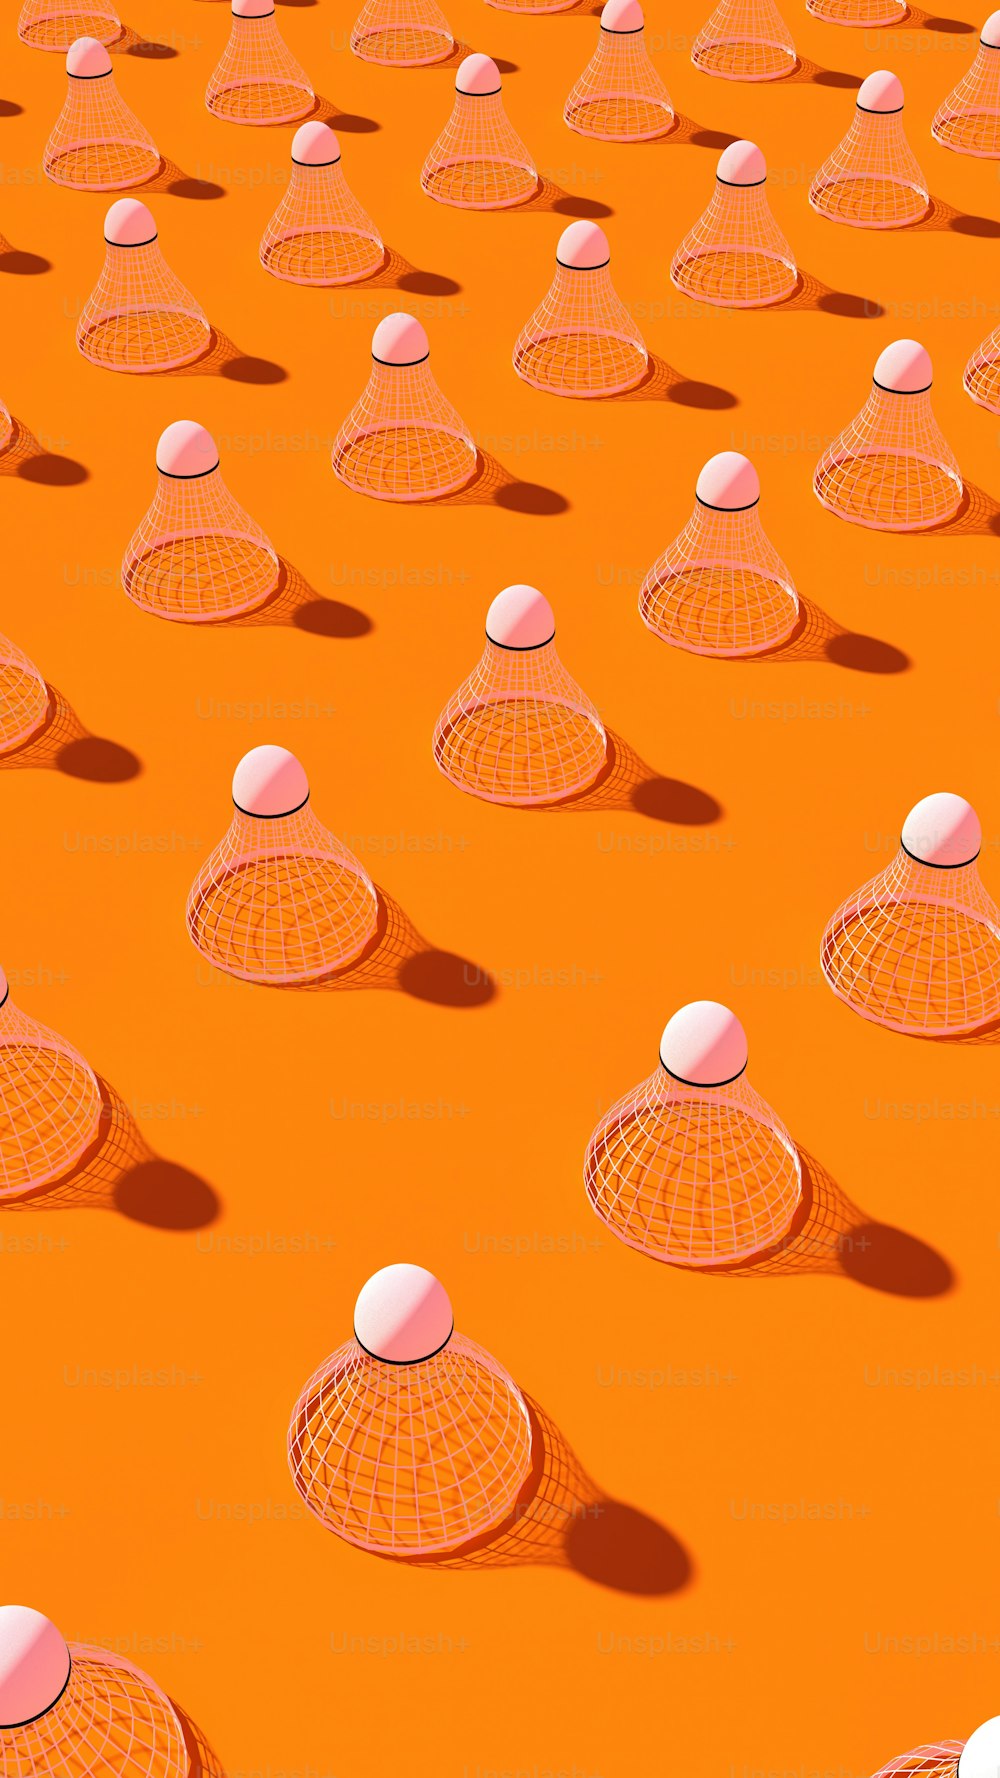 주황색 표면 위에 앉아 있는 흰색 공 그룹